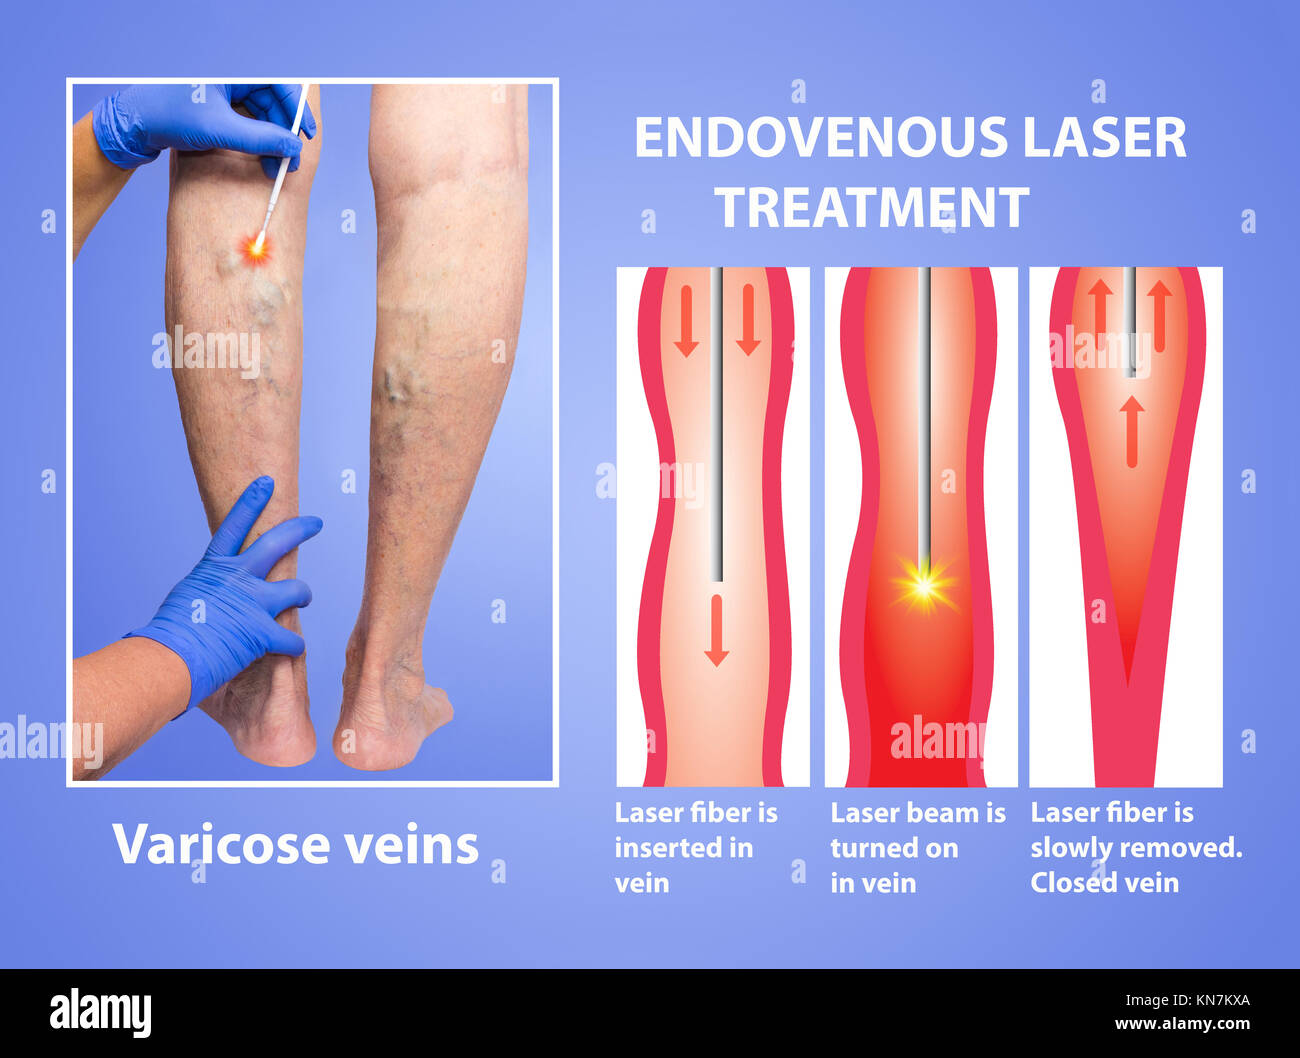 Vene varicose. Trattamento con laser endovenoso delle gambe femmina Foto  stock - Alamy